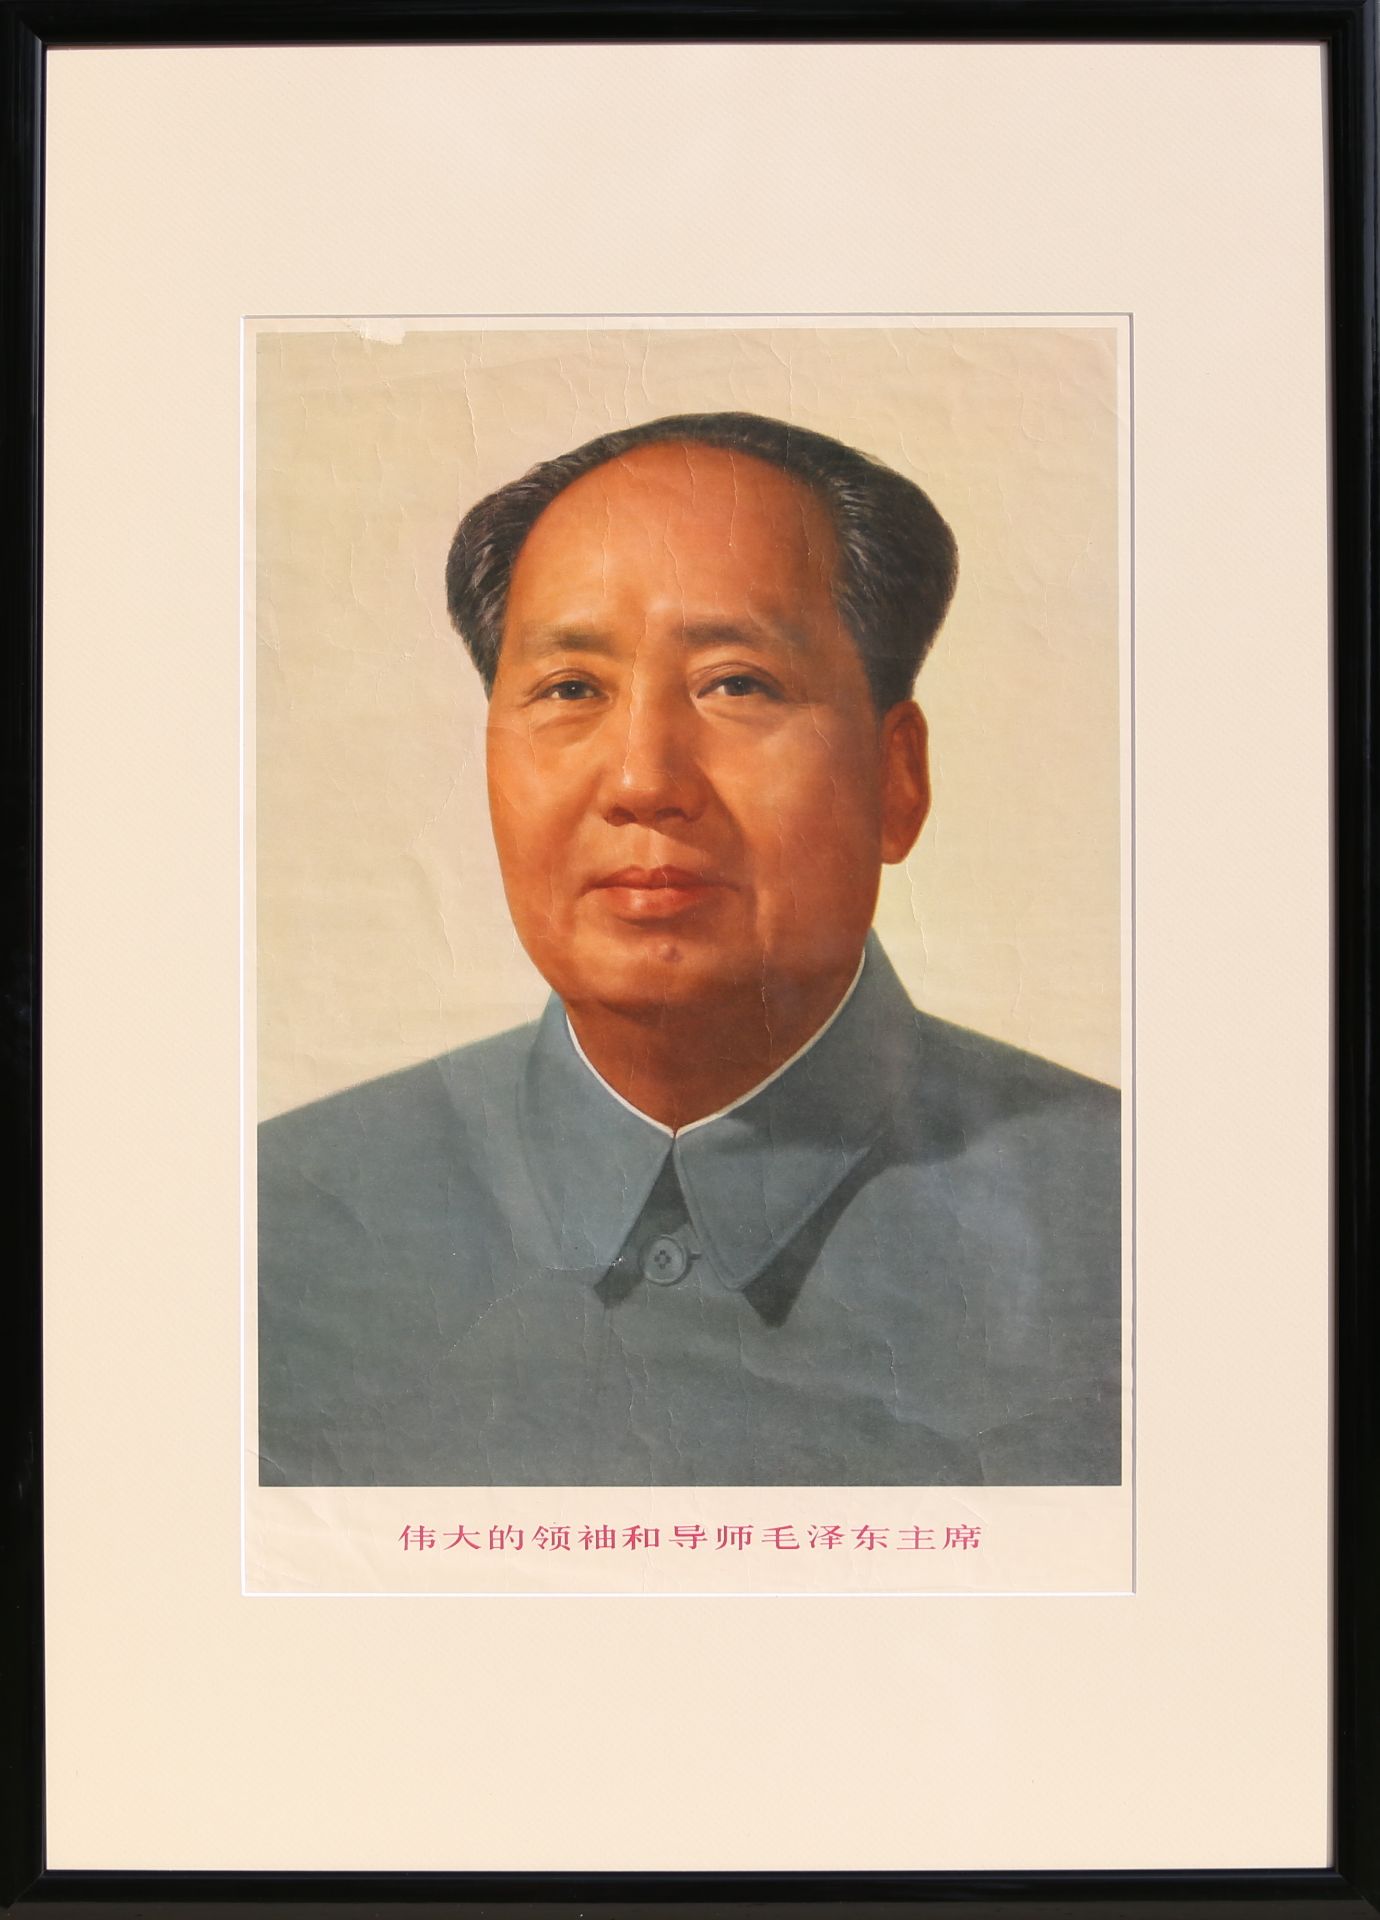 17 Affiches de propagande de la révolution culturelle chinoise Encadrée 75cm x 52cm - Bild 14 aus 17